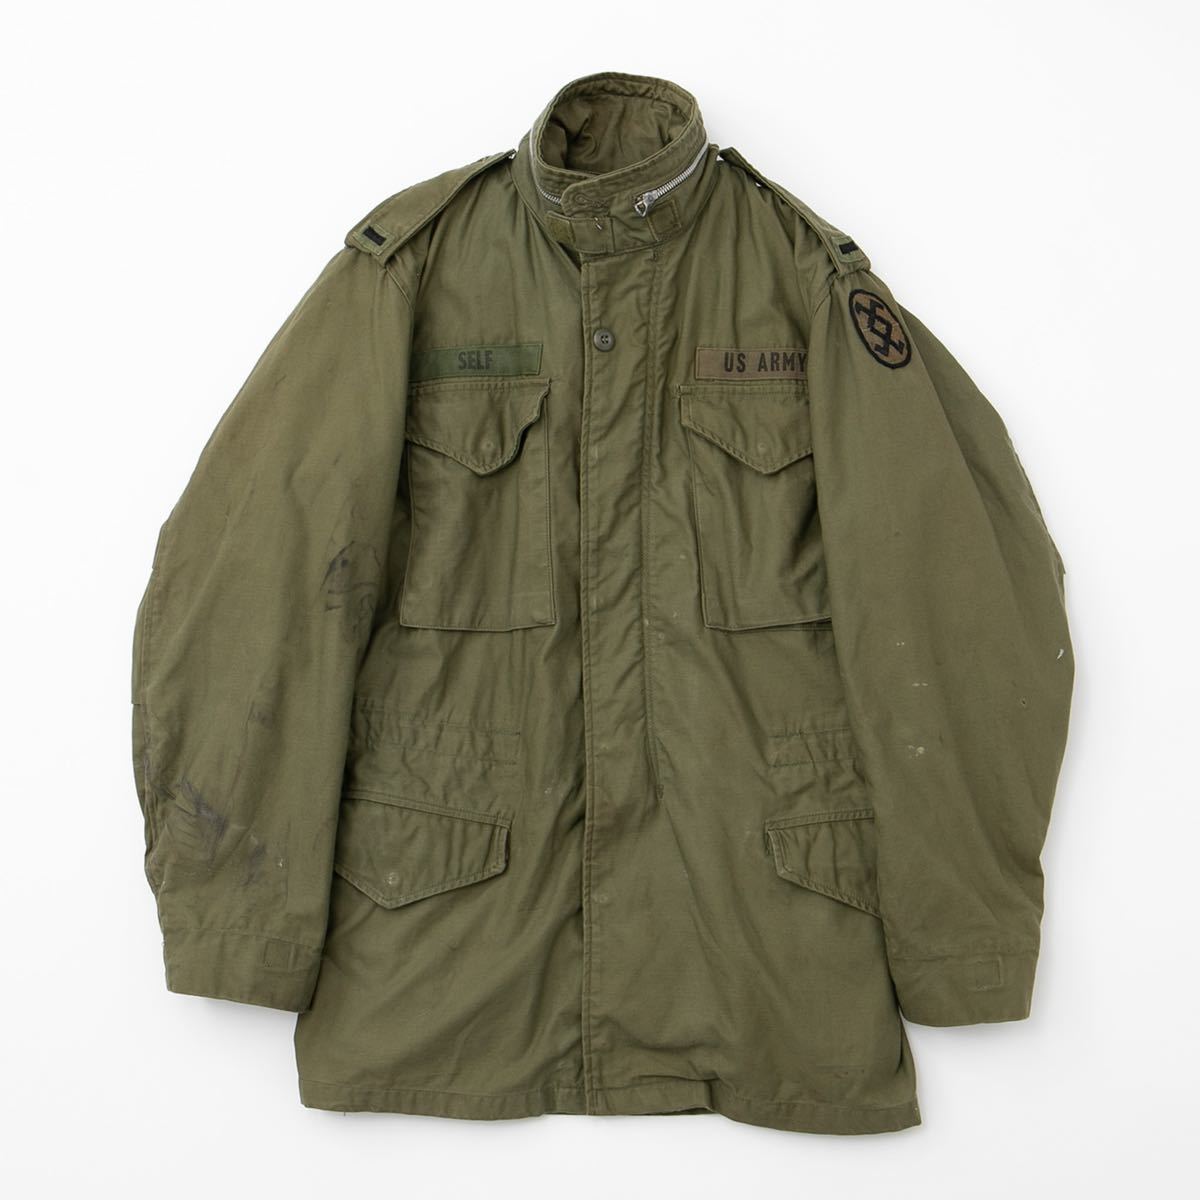 【名品】60s U.S ARMY M-65 M65 field jacket 2nd ヴィンテージ フィールドジャケット LONG-SMALL  フード付き アメリカ軍 Vintage military